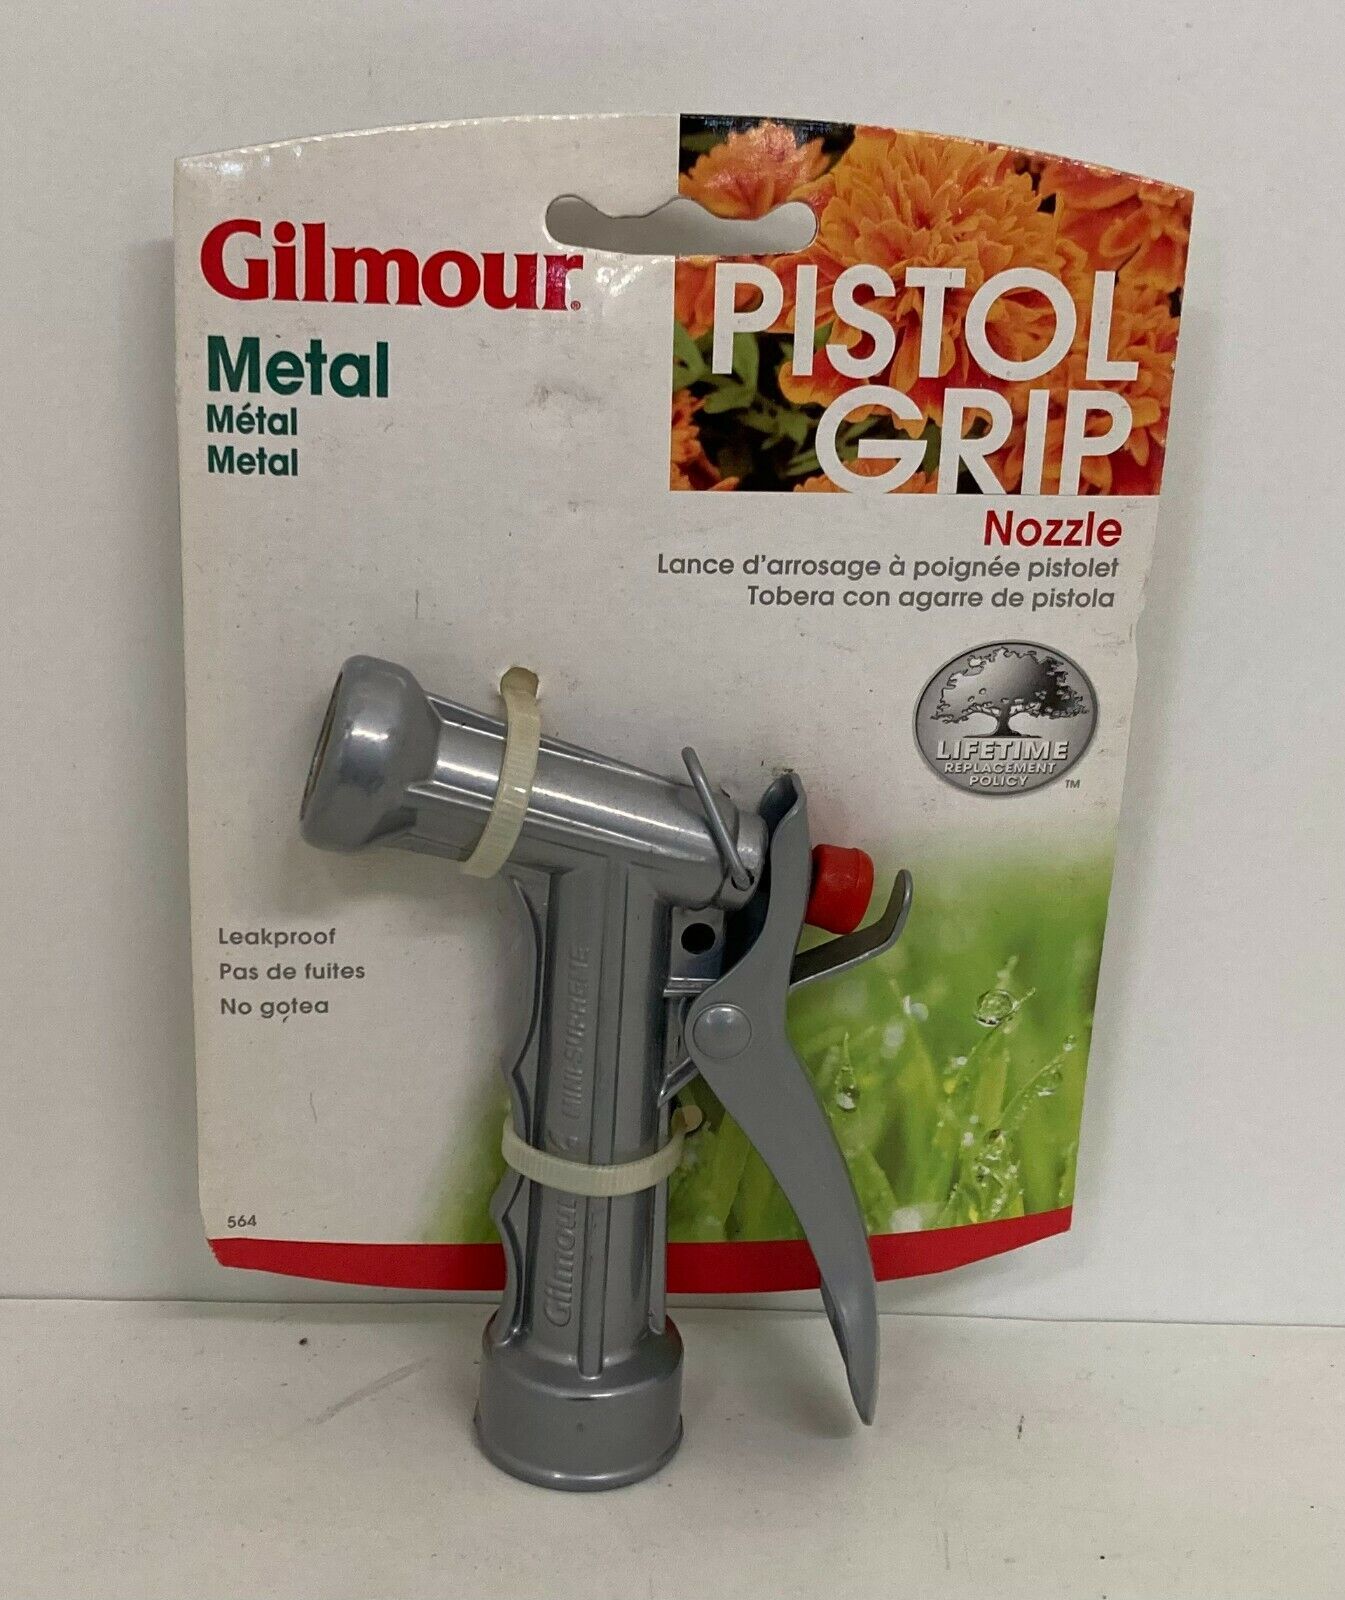 Gilmour Metal Pistol Grip Hose Nozzle #564 - $14.84